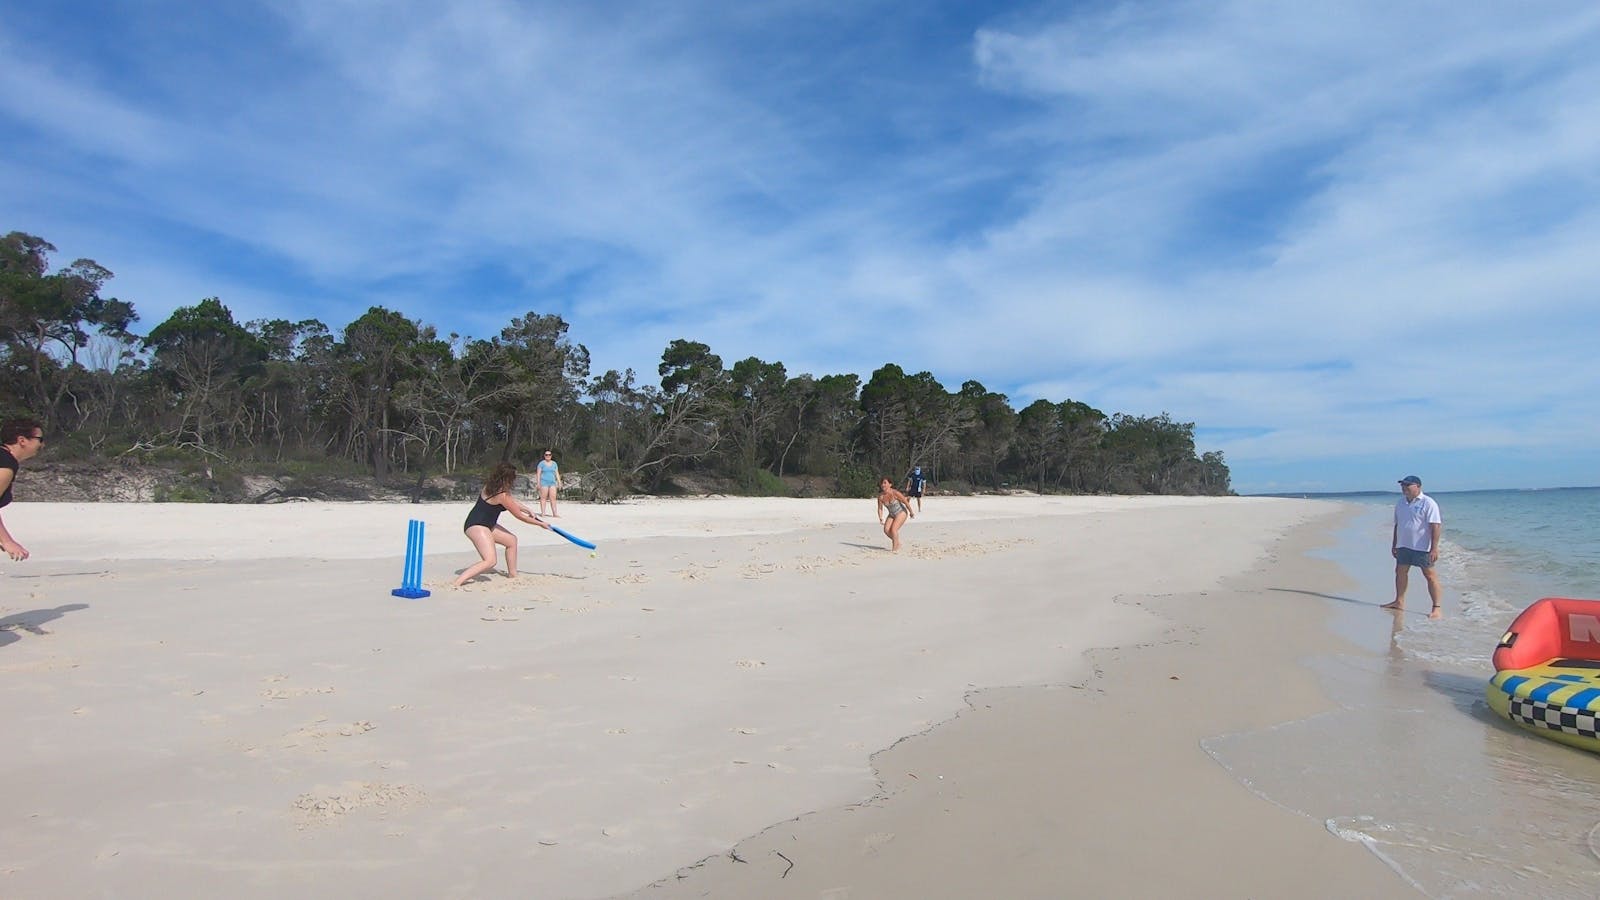 Beach cricket on secluded West Coast Fraser Island beach half-day tour